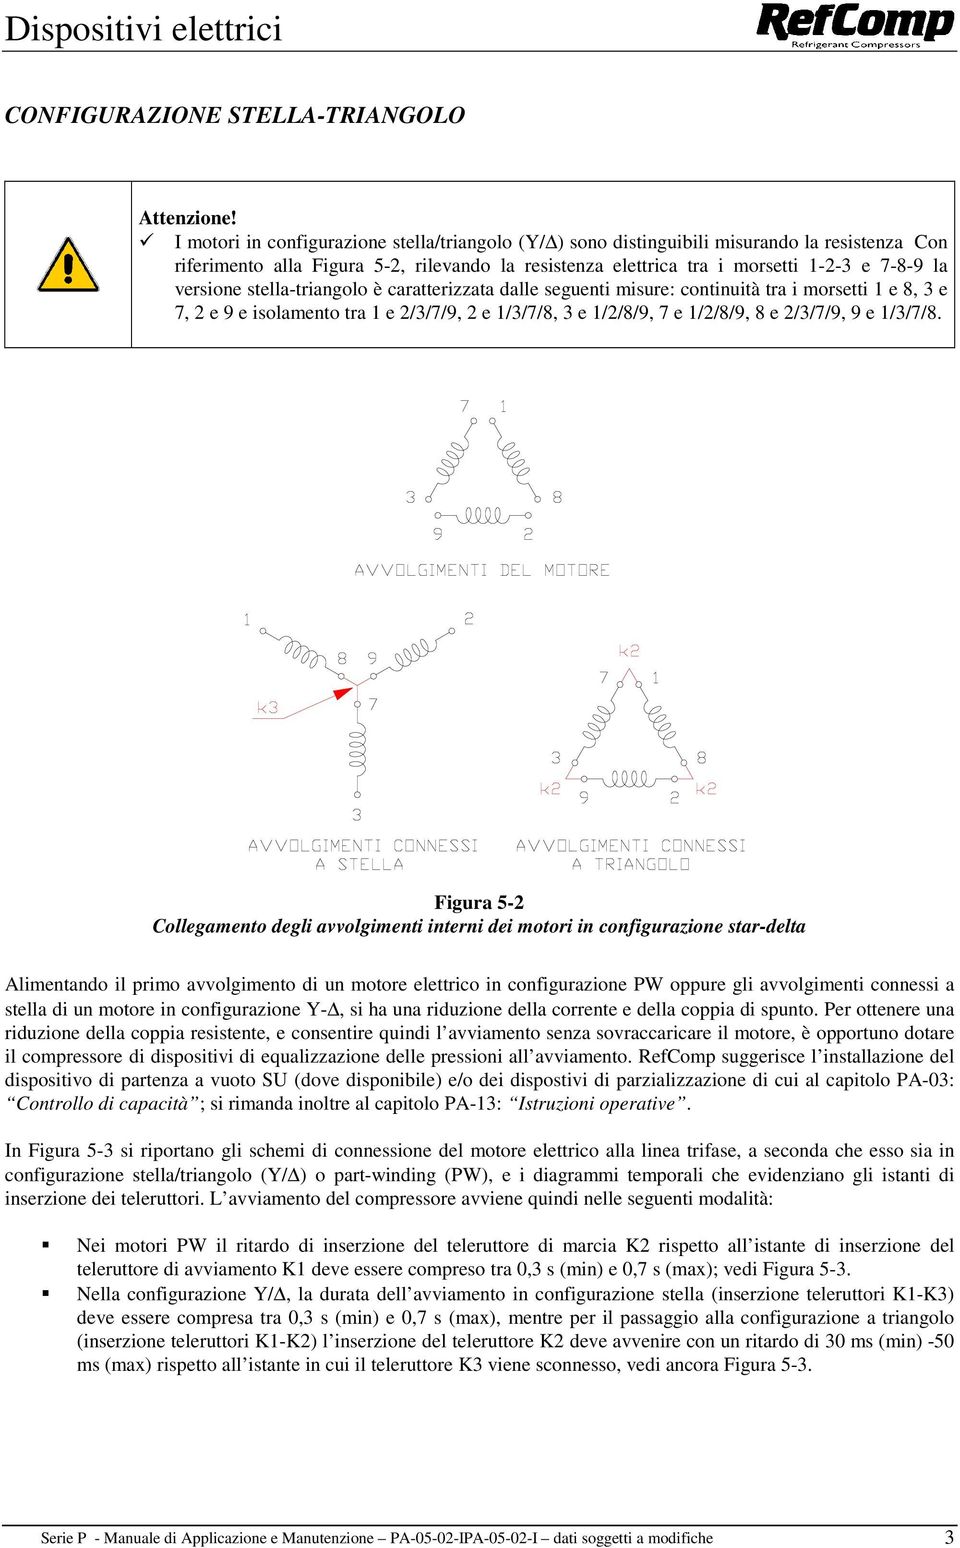 versione stella-triangolo è caratterizzata dalle seguenti misure: continuità tra i morsetti 1 e 8, 3 e 7, 2 e 9 e isolamento tra 1 e 2/3/7/9, 2 e 1/3/7/8, 3 e 1/2/8/9, 7 e 1/2/8/9, 8 e 2/3/7/9, 9 e